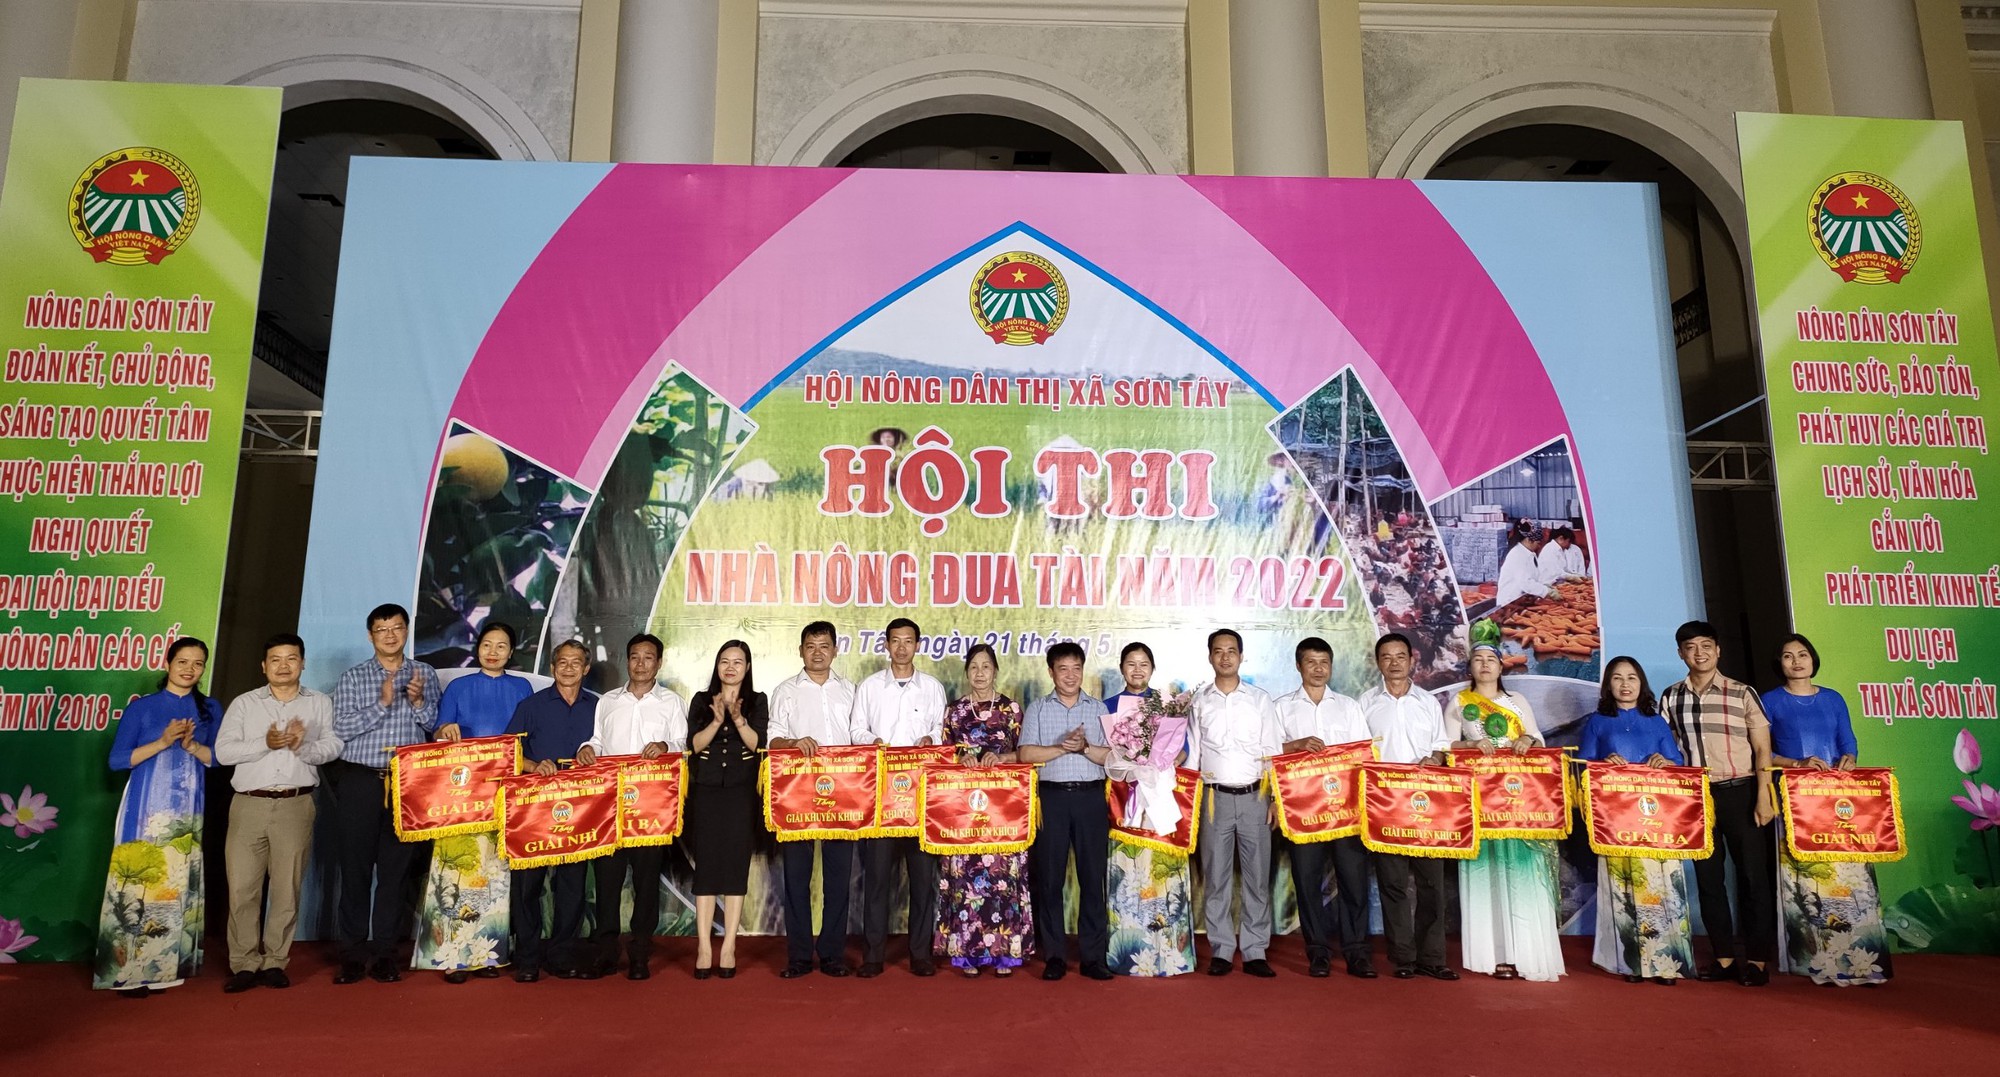 Hà Nội: Nông dân Sơn Tây trổ tài kiến thức tại Hội thi “Nhà nông đua tài” năm 2022 - Ảnh 5.